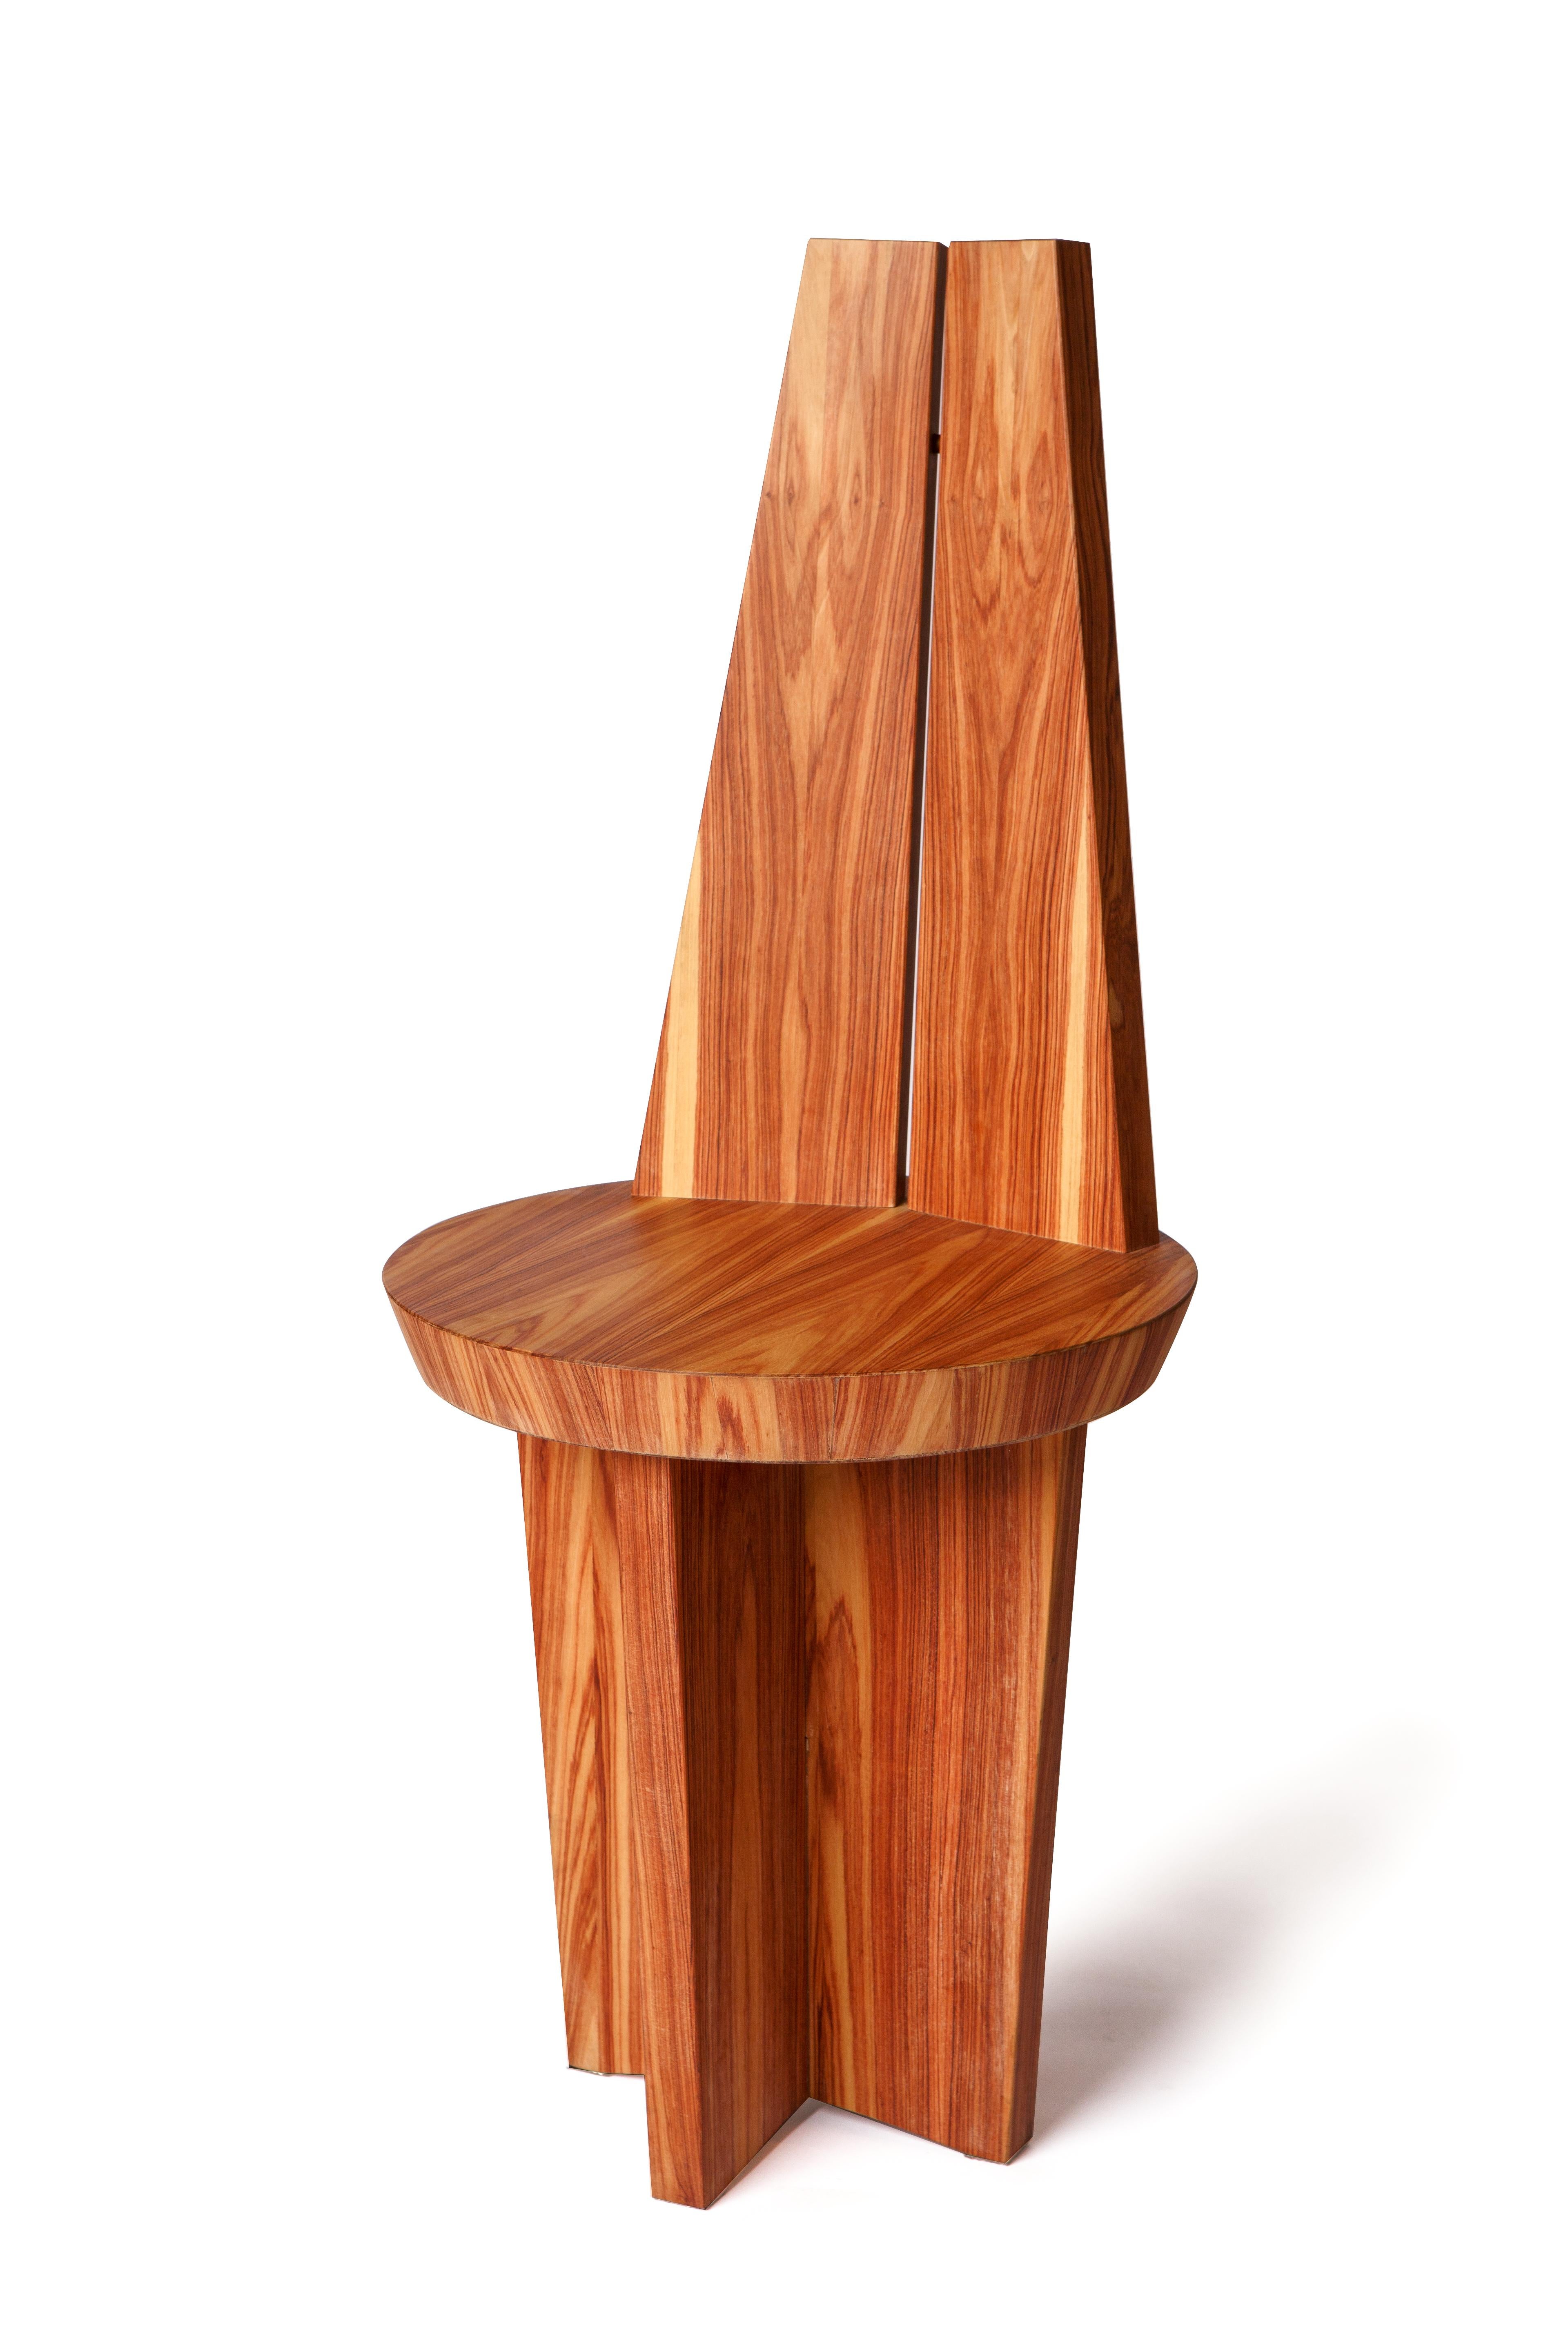 La chaise Povera s'inspire de l'intemporalité du mobilier folklorique traditionnel. 
Sa forme est presque une petite sculpture qui nous ramène au passé, aux racines de nos terres, à la culture artisanale, aux matériaux simples et aux formes